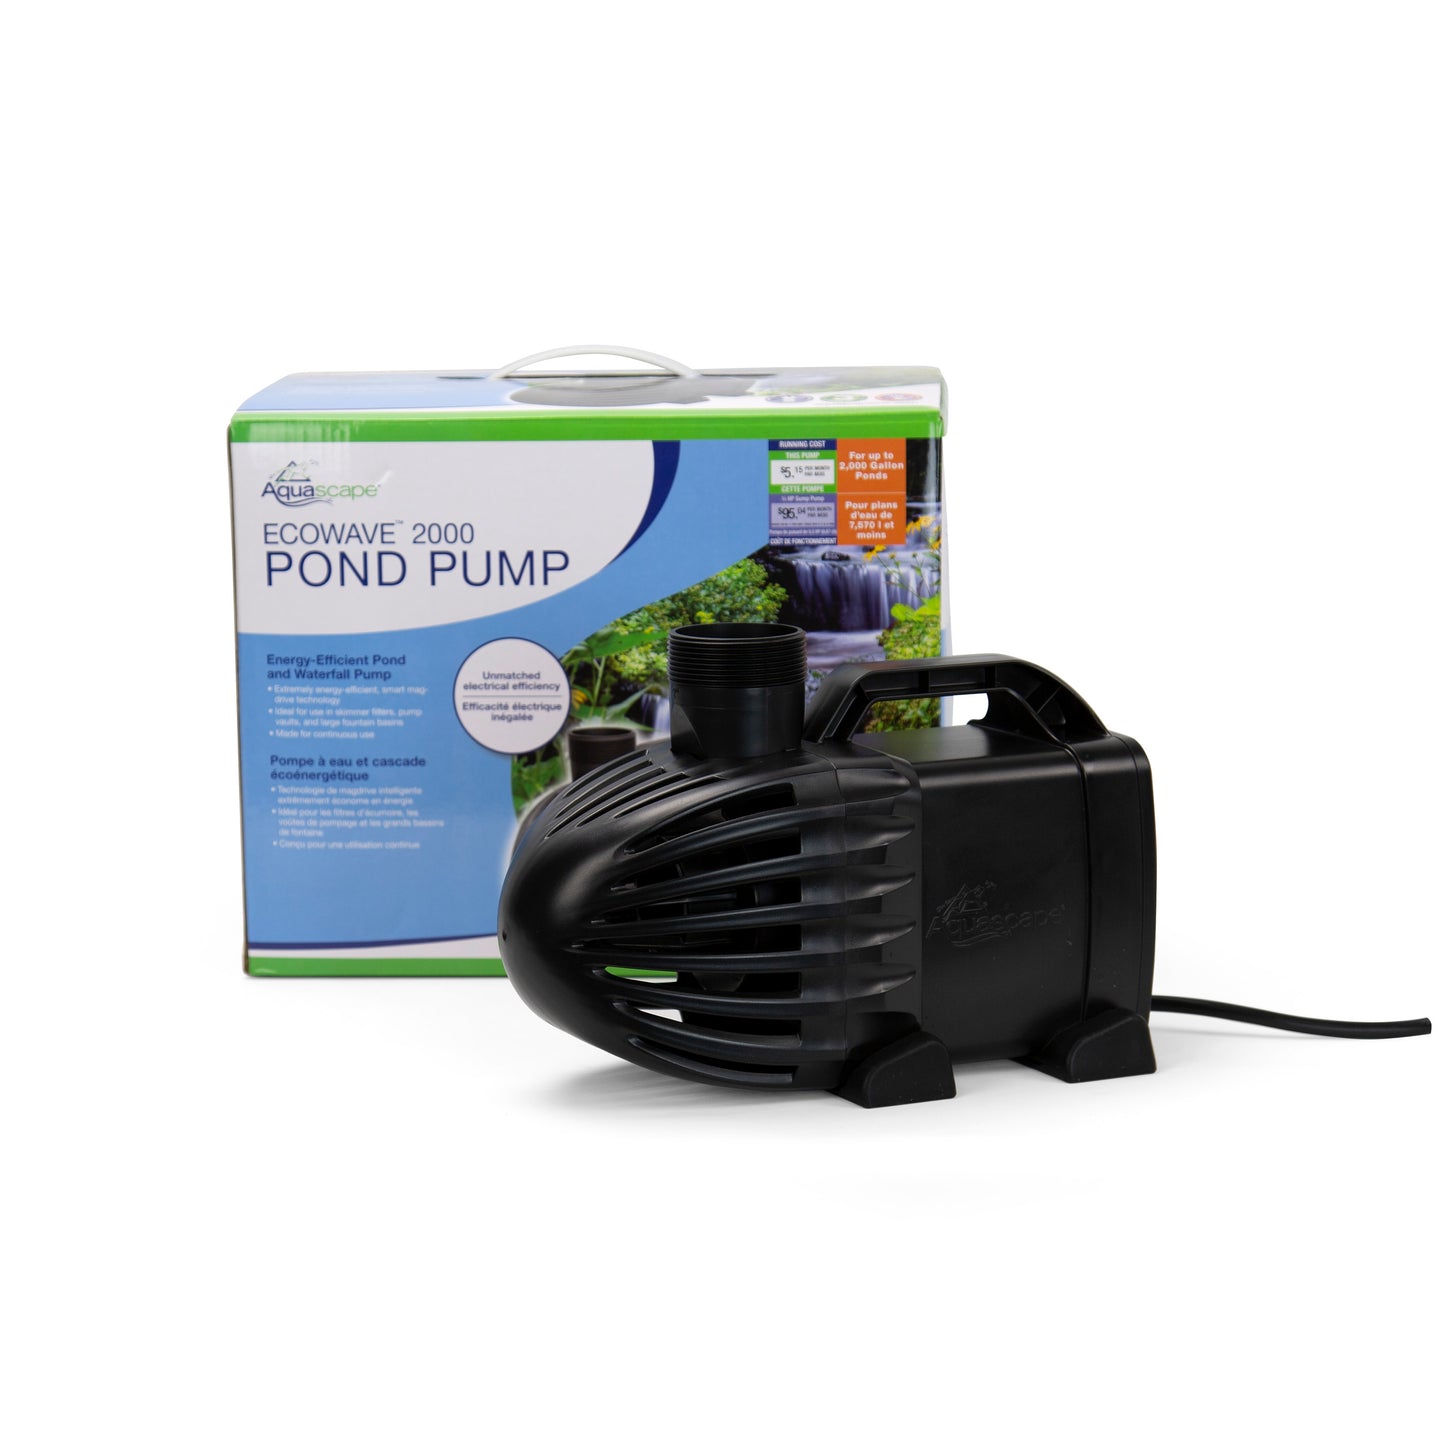 EcoWave 2000 Pond Pump